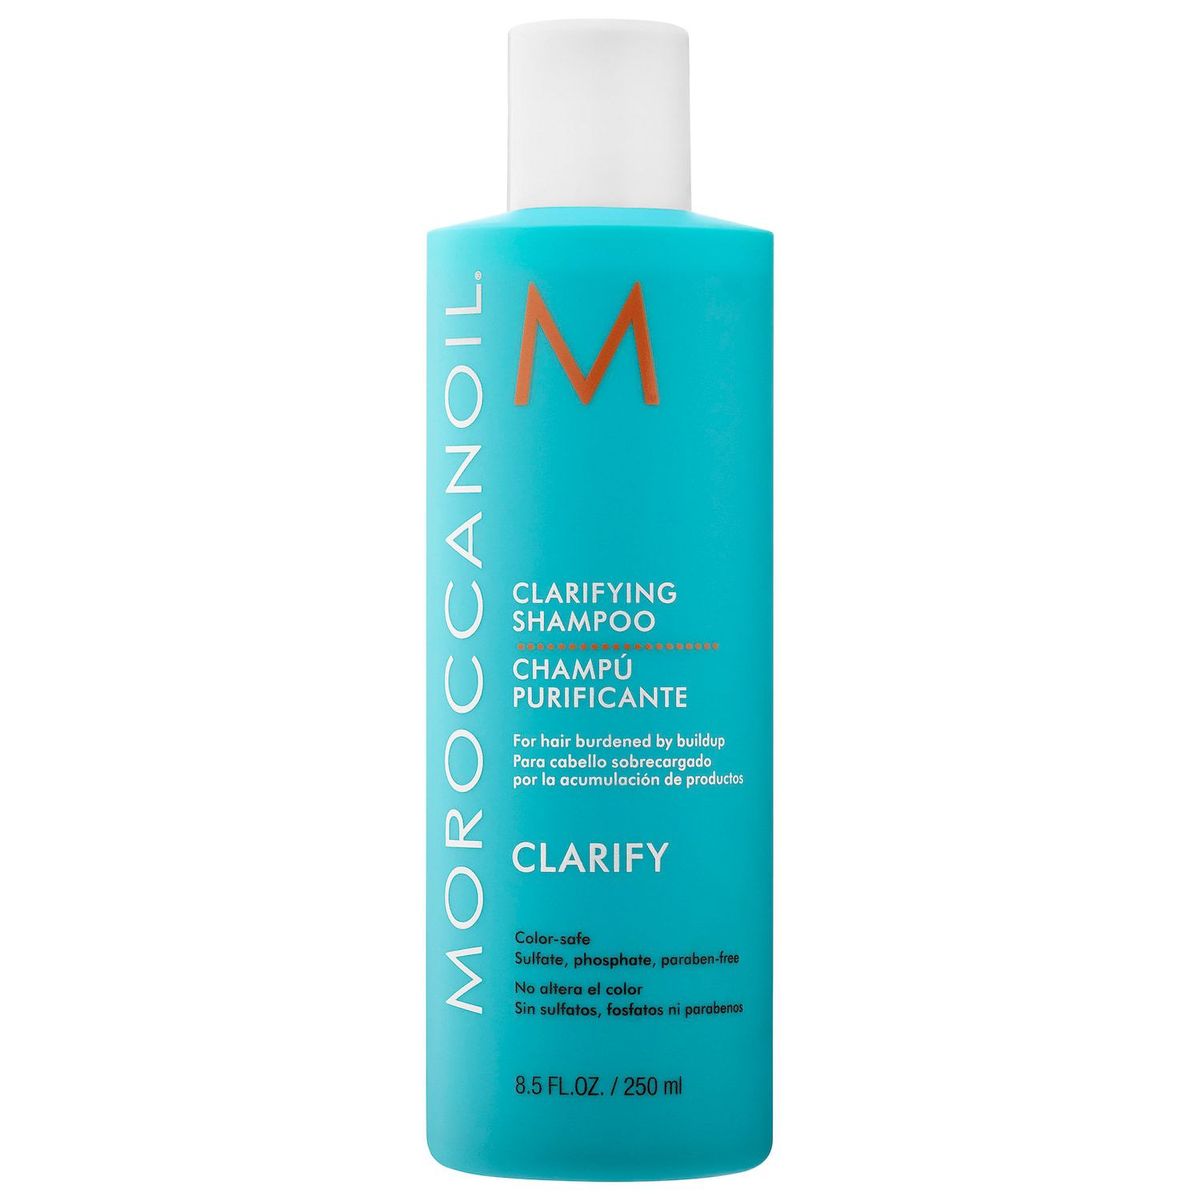 Morrocanoil Clarifying Shampoo